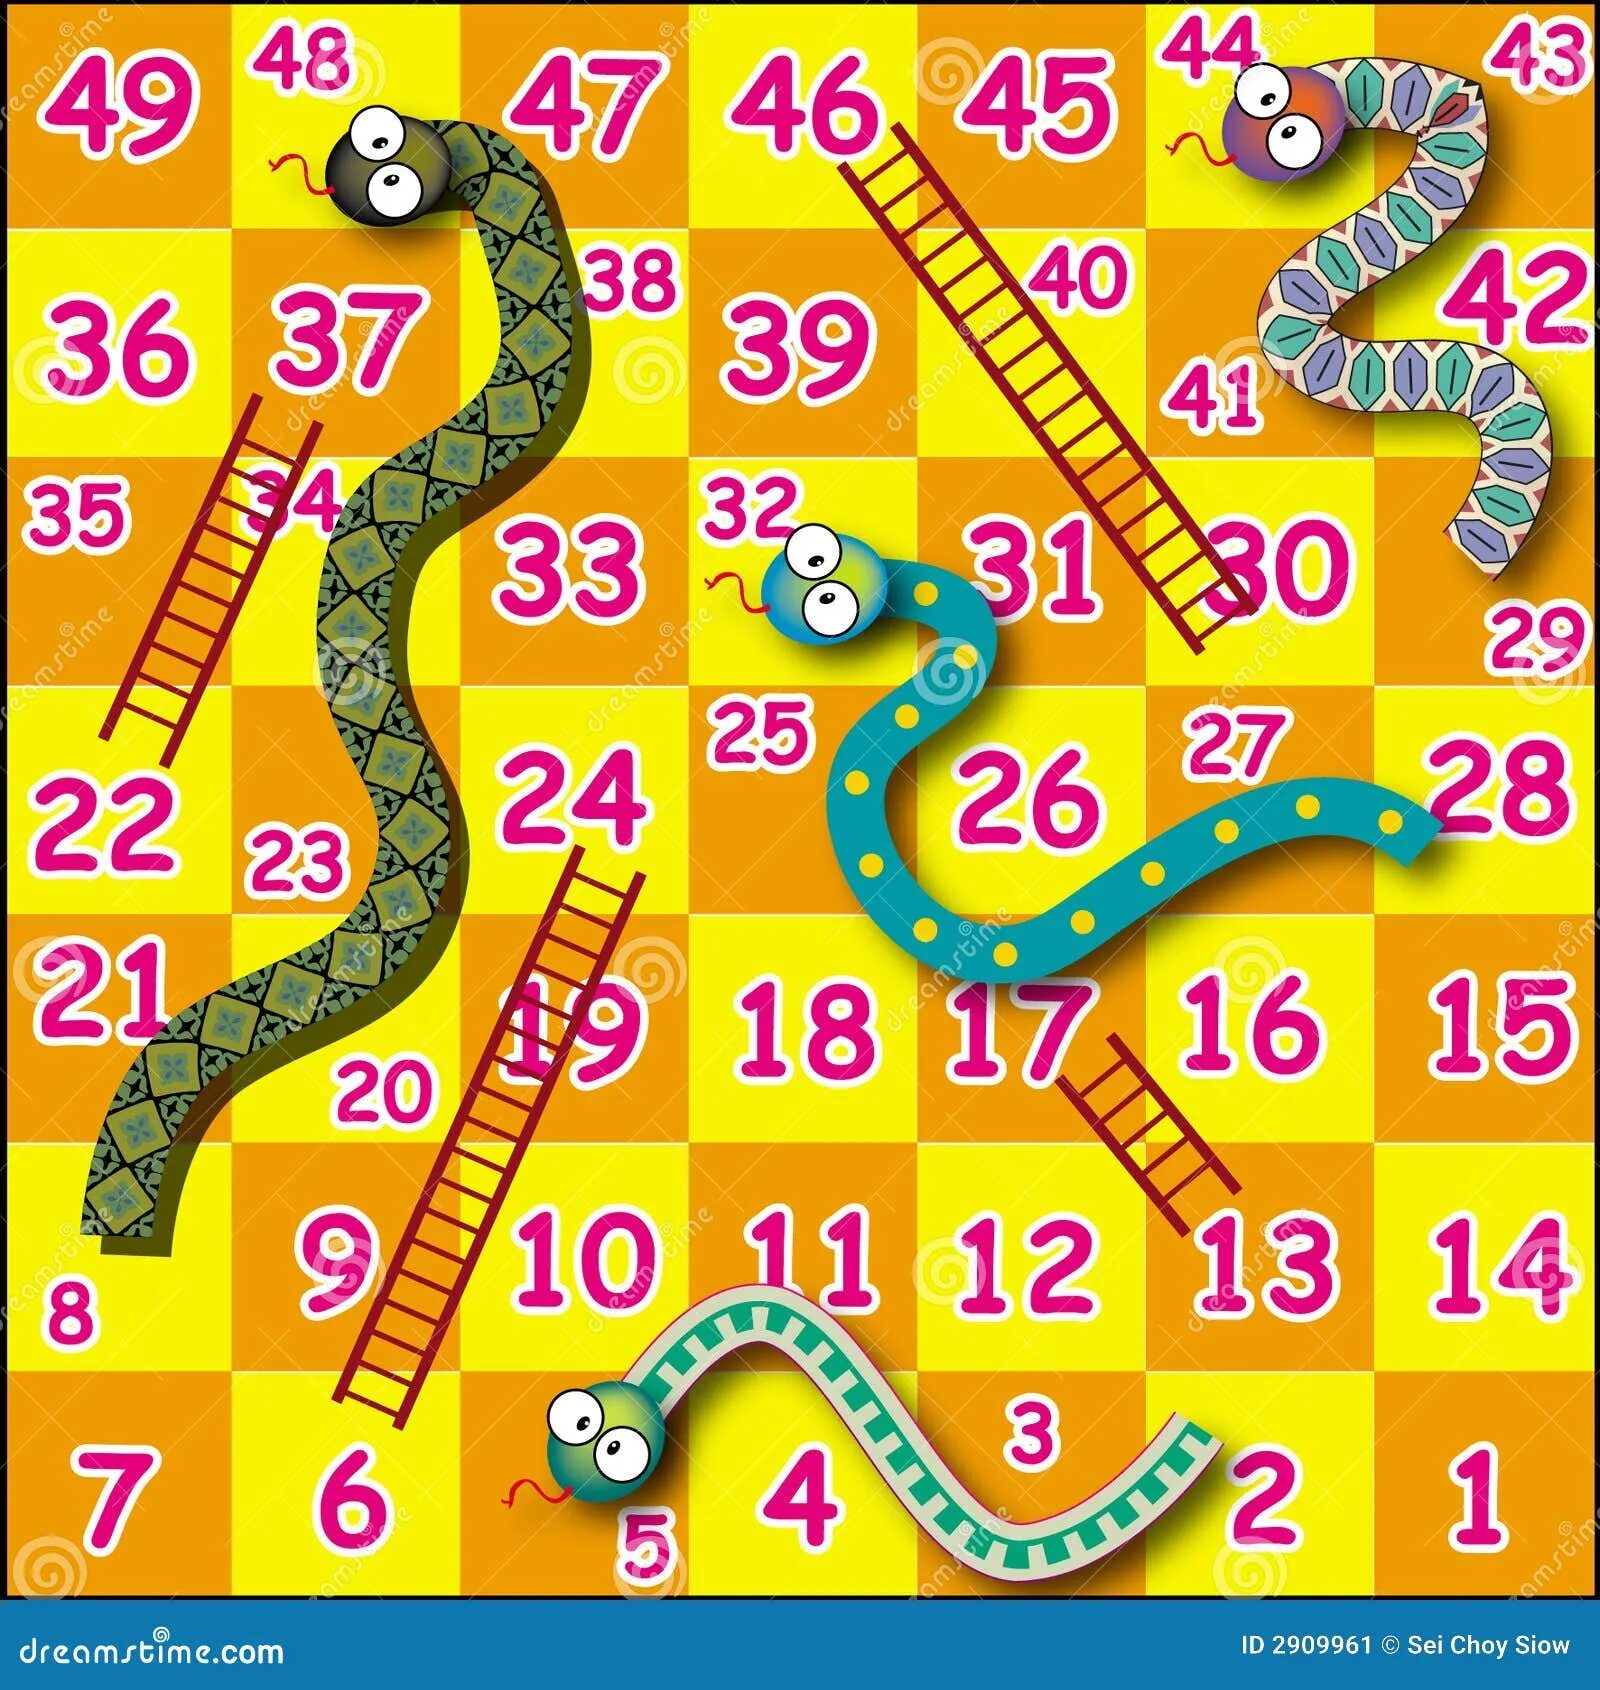 Правила змейки. Змейка игра. Змеи и лестницы игровое поле. Игры со змеями настольные. Настольная игра с лестницами и змеями.